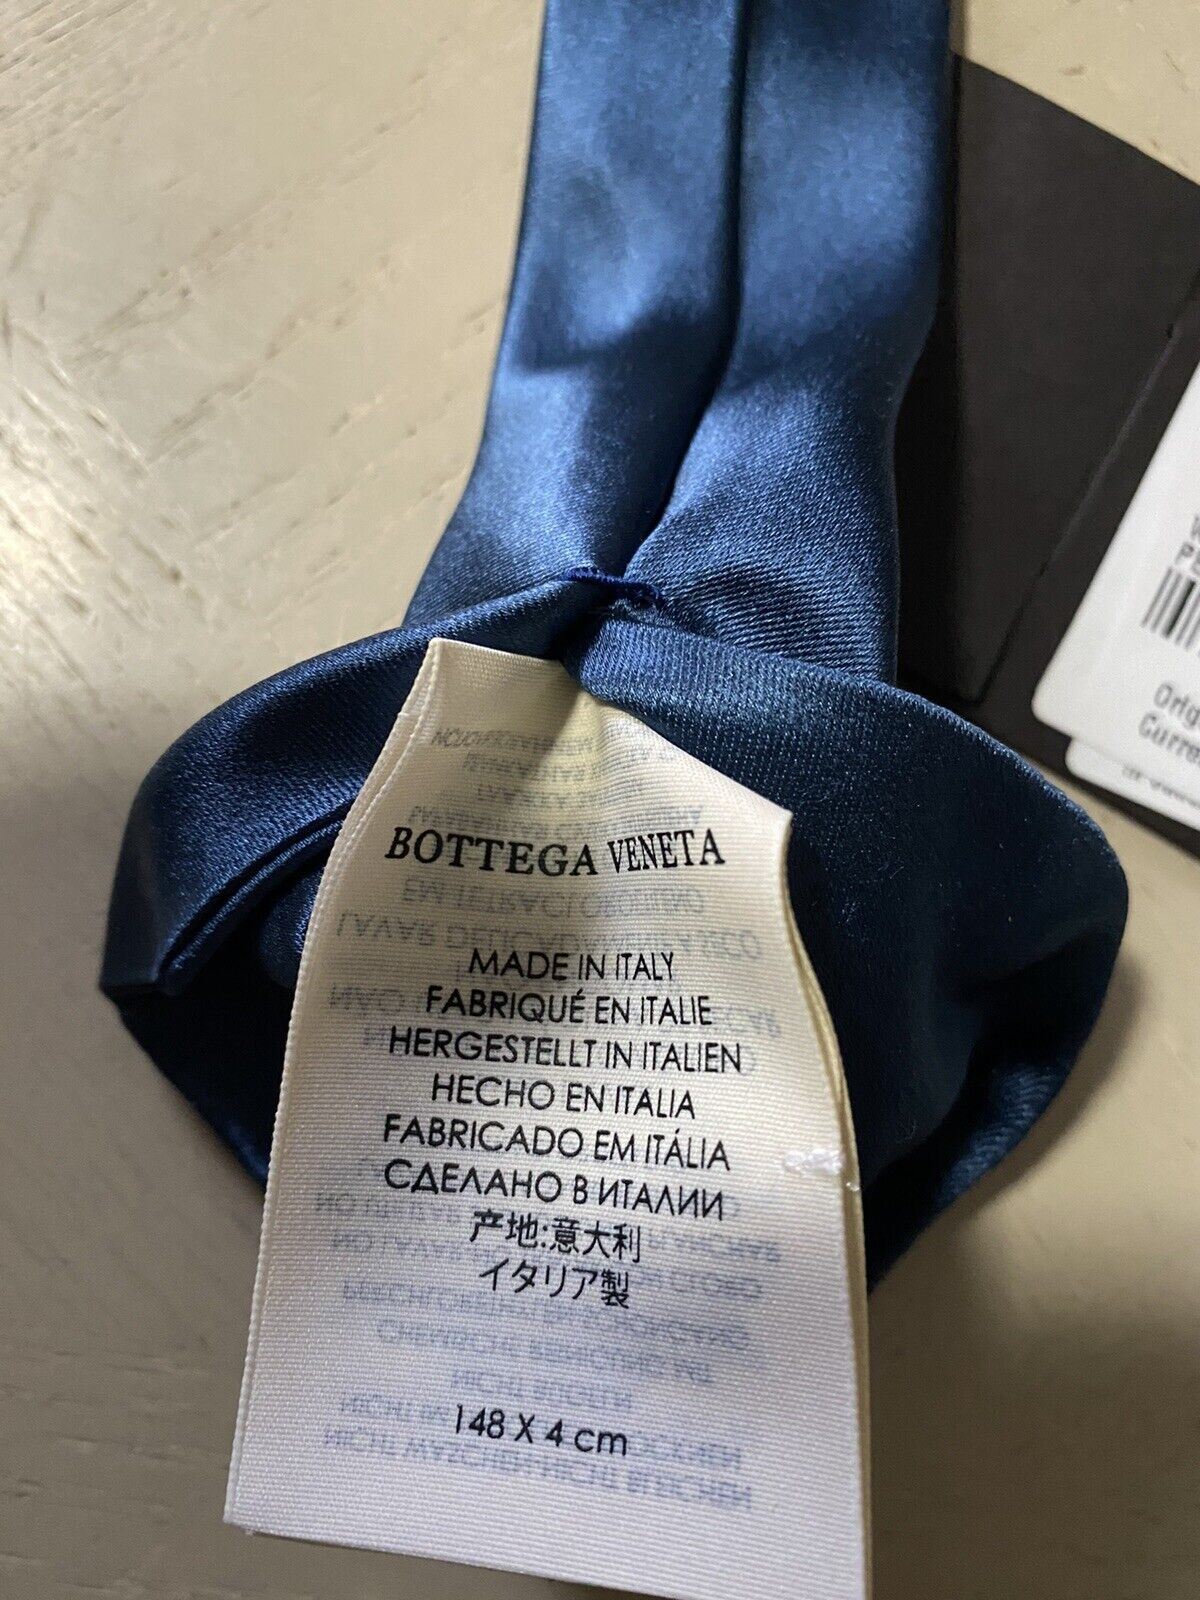 Новый узкий шелковый галстук Bottega Veneta Petroleum Blue производства Италии